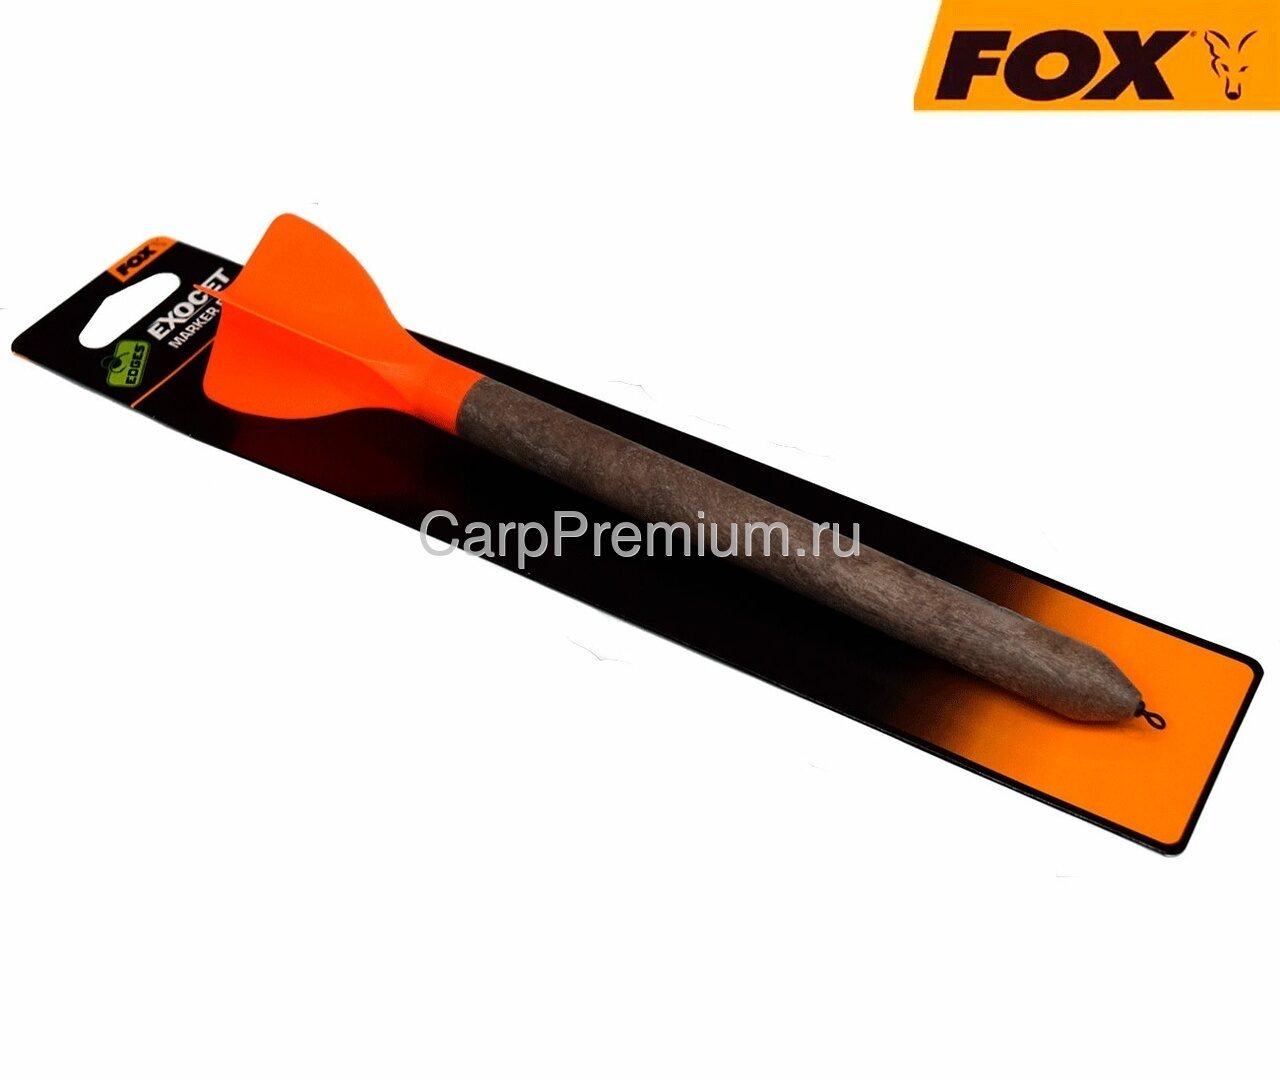 Поплавок маркерный Fox (Фокс) - Exocet Marker Float